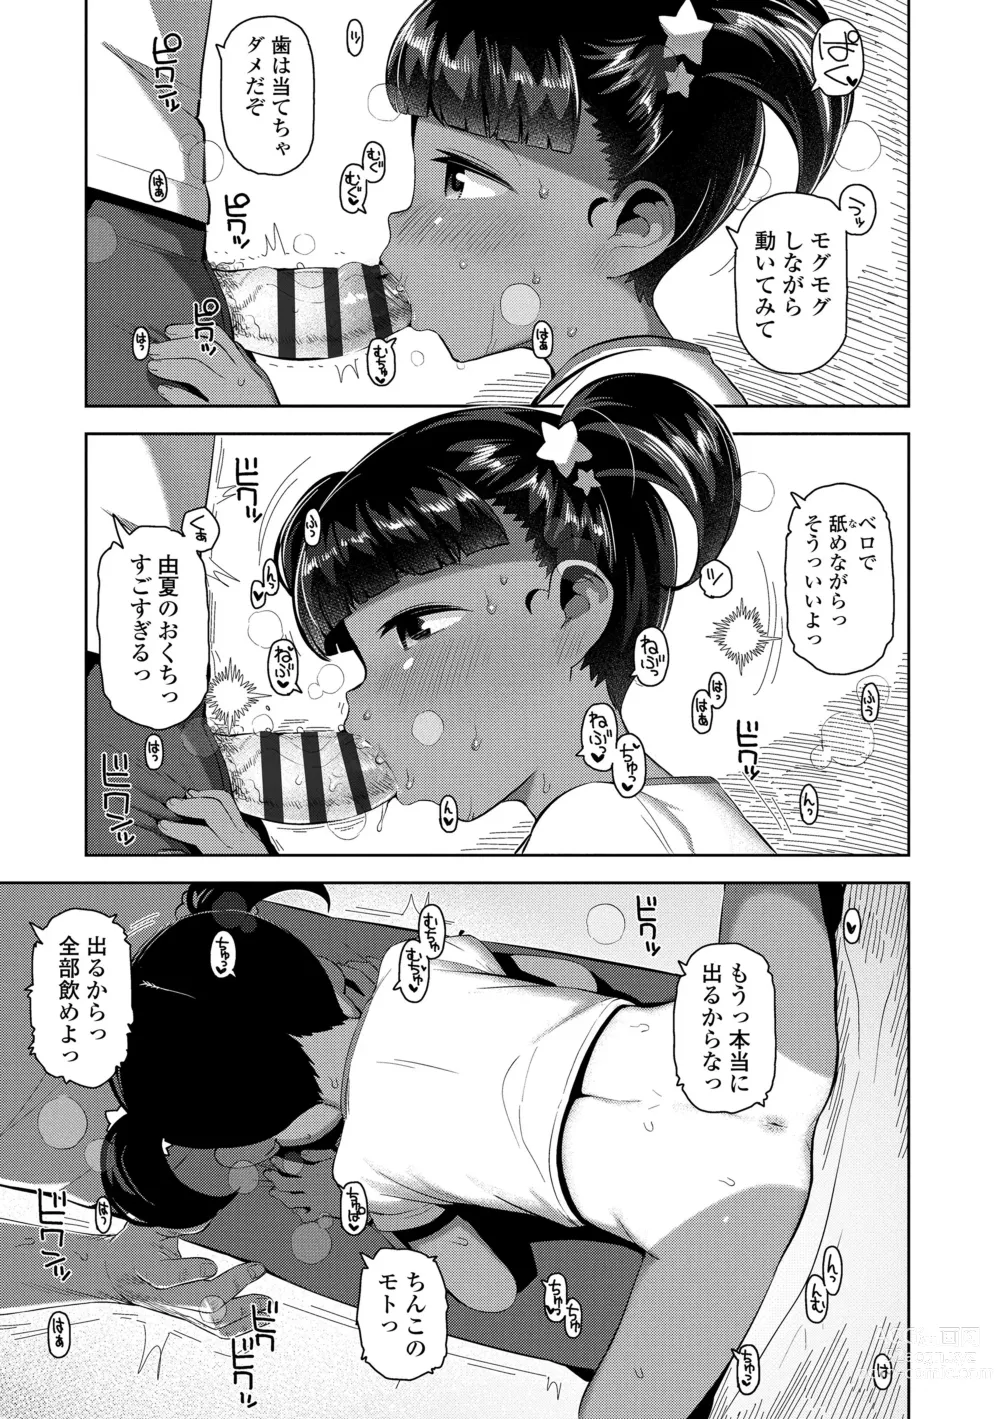 Page 181 of manga Chitchakute ohisama no nioi